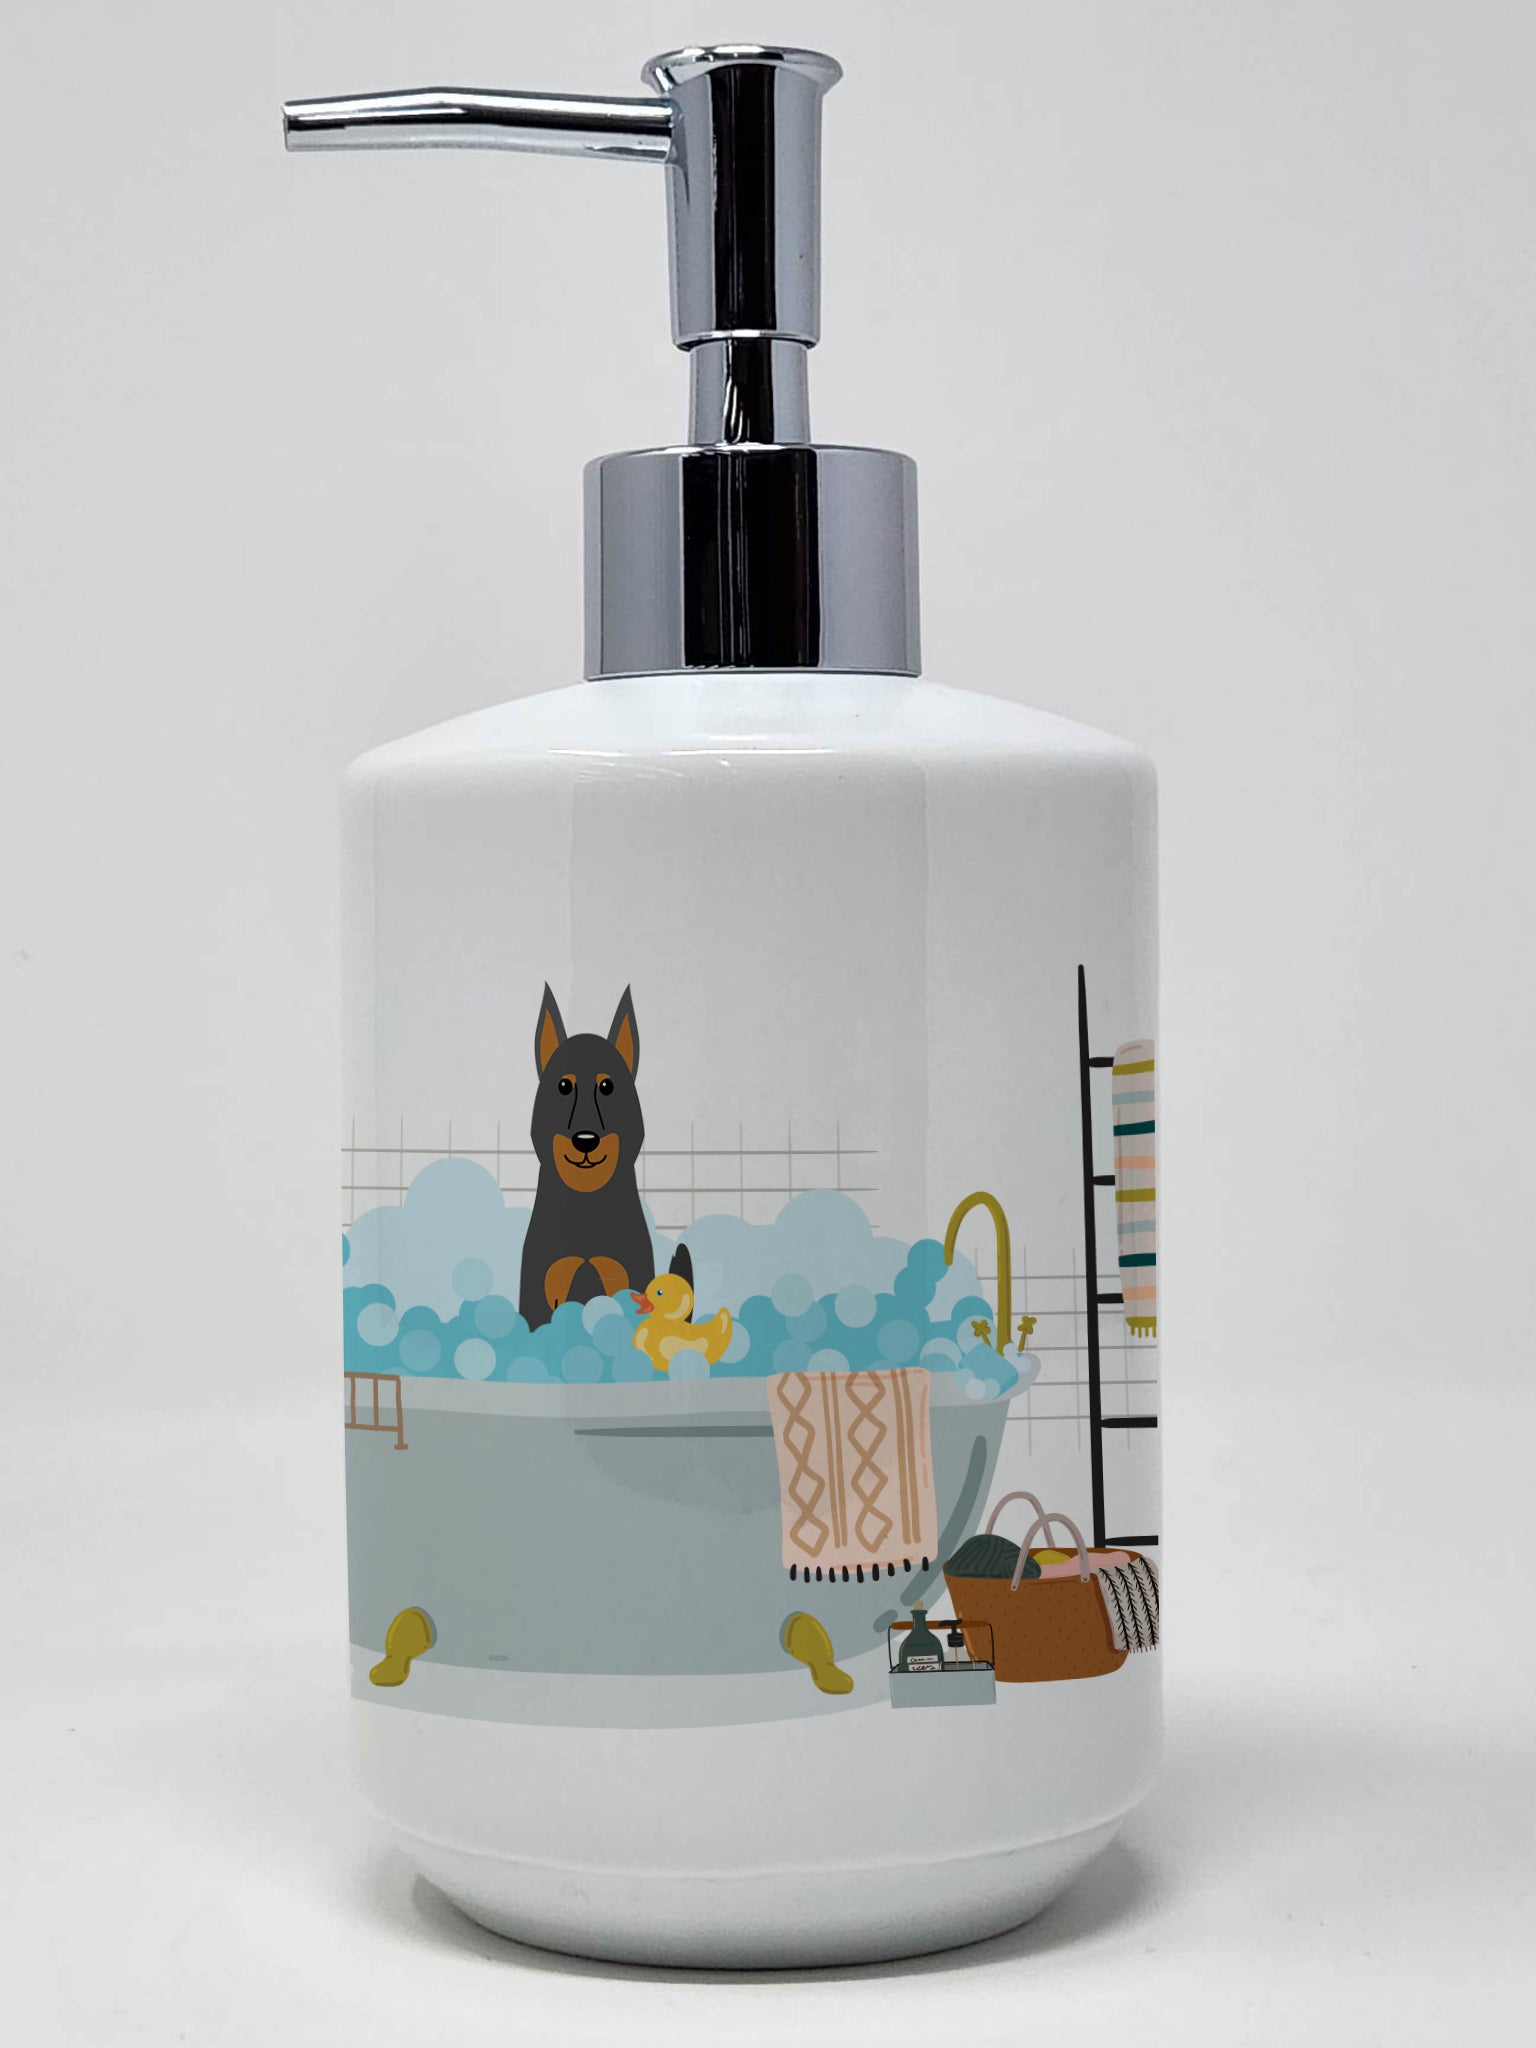 Buy this Beauce Shepherd Dog in Bathtub Ceramic Soap Dispenser